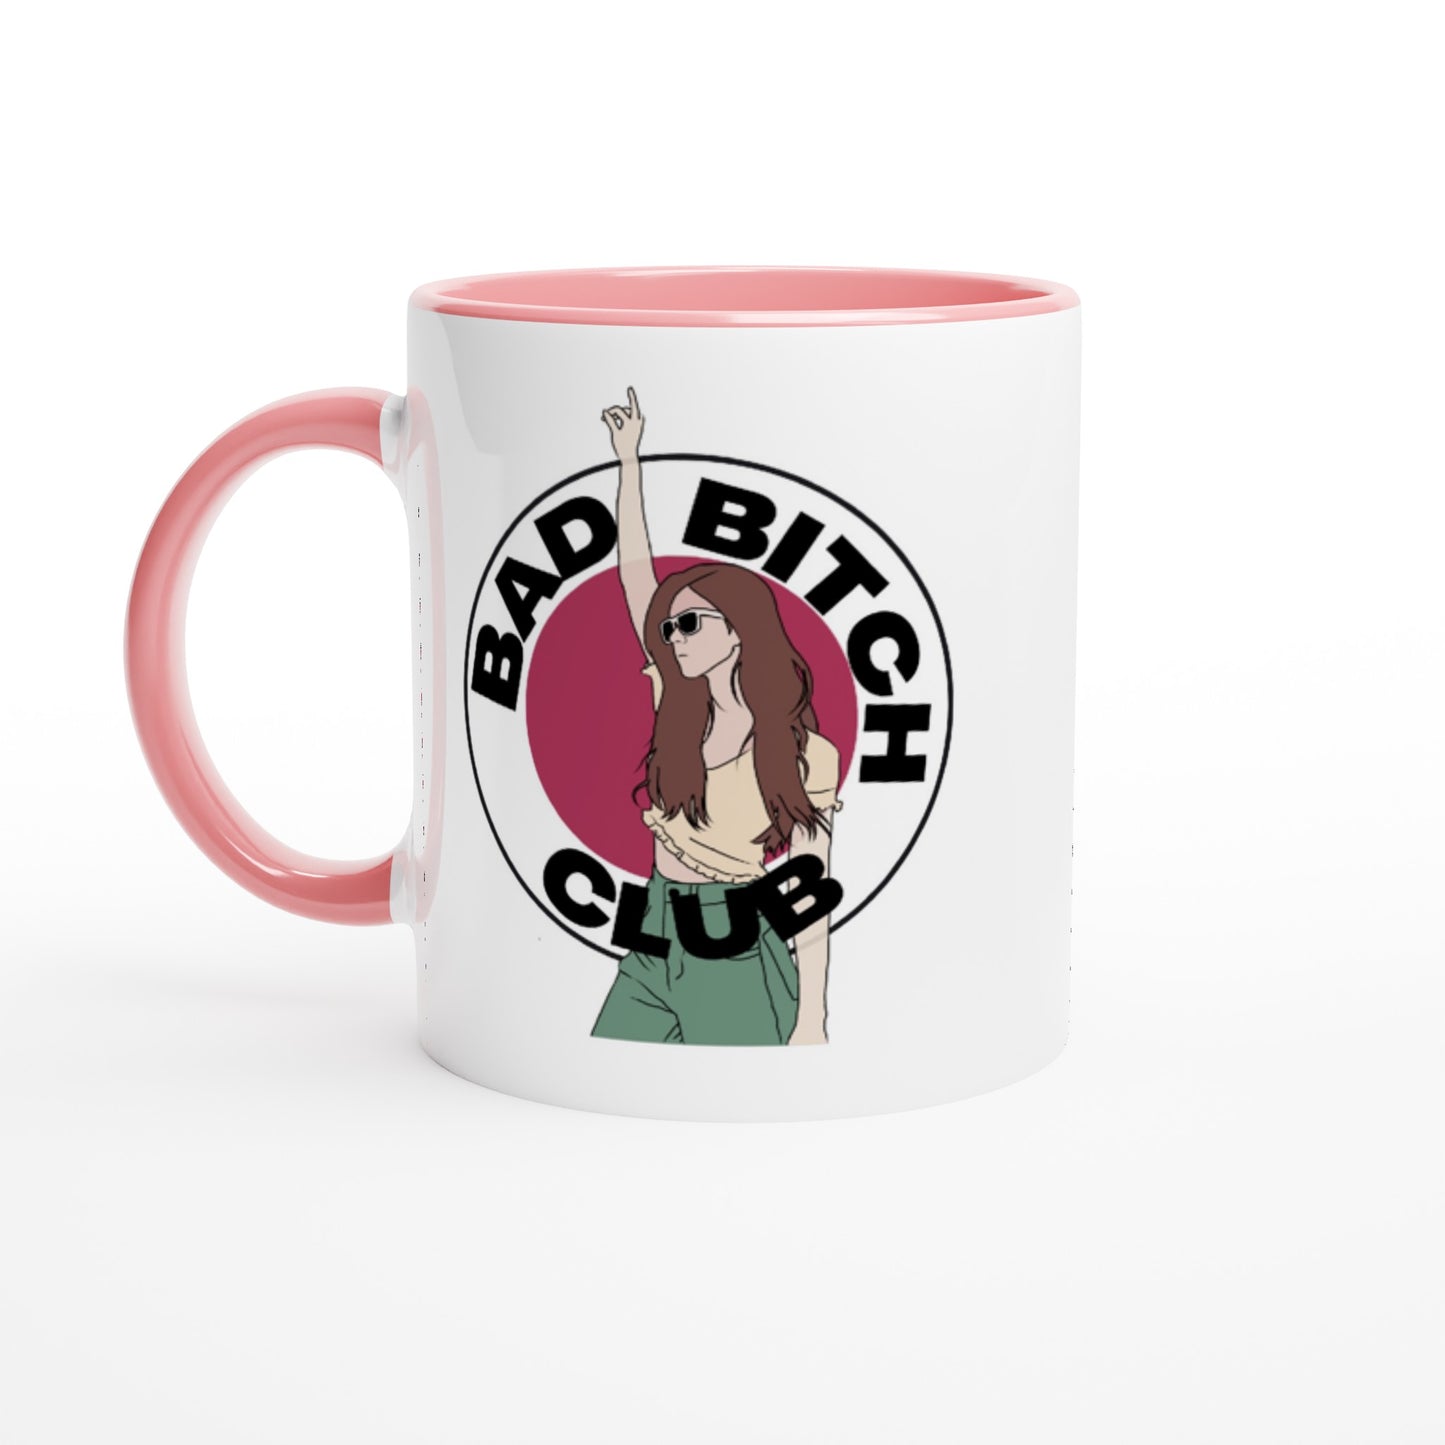 Bad Bitch Club - White 11oz Ceramic Mug with Color Inside